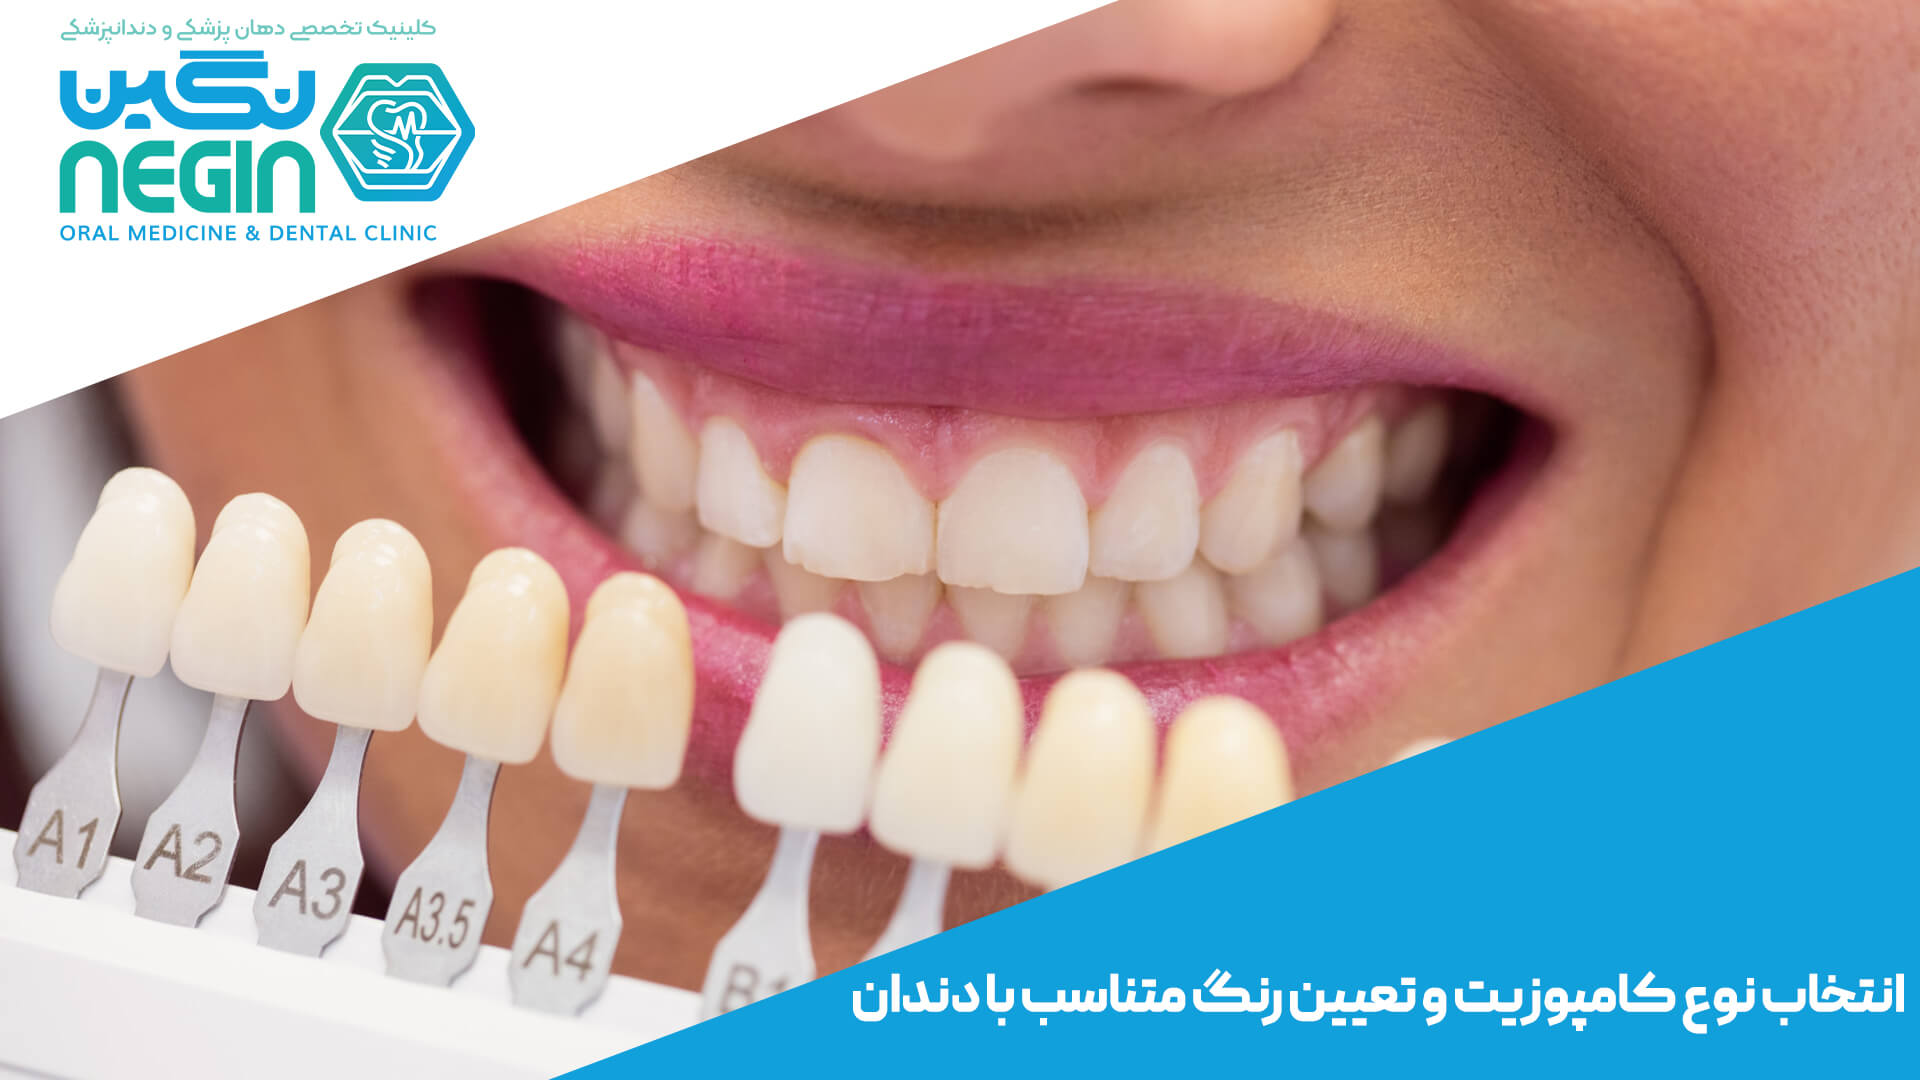 مراحل انجام ونیر کامپوزیت دندان در شیراز - کلینیک دندانپزشکی نگین